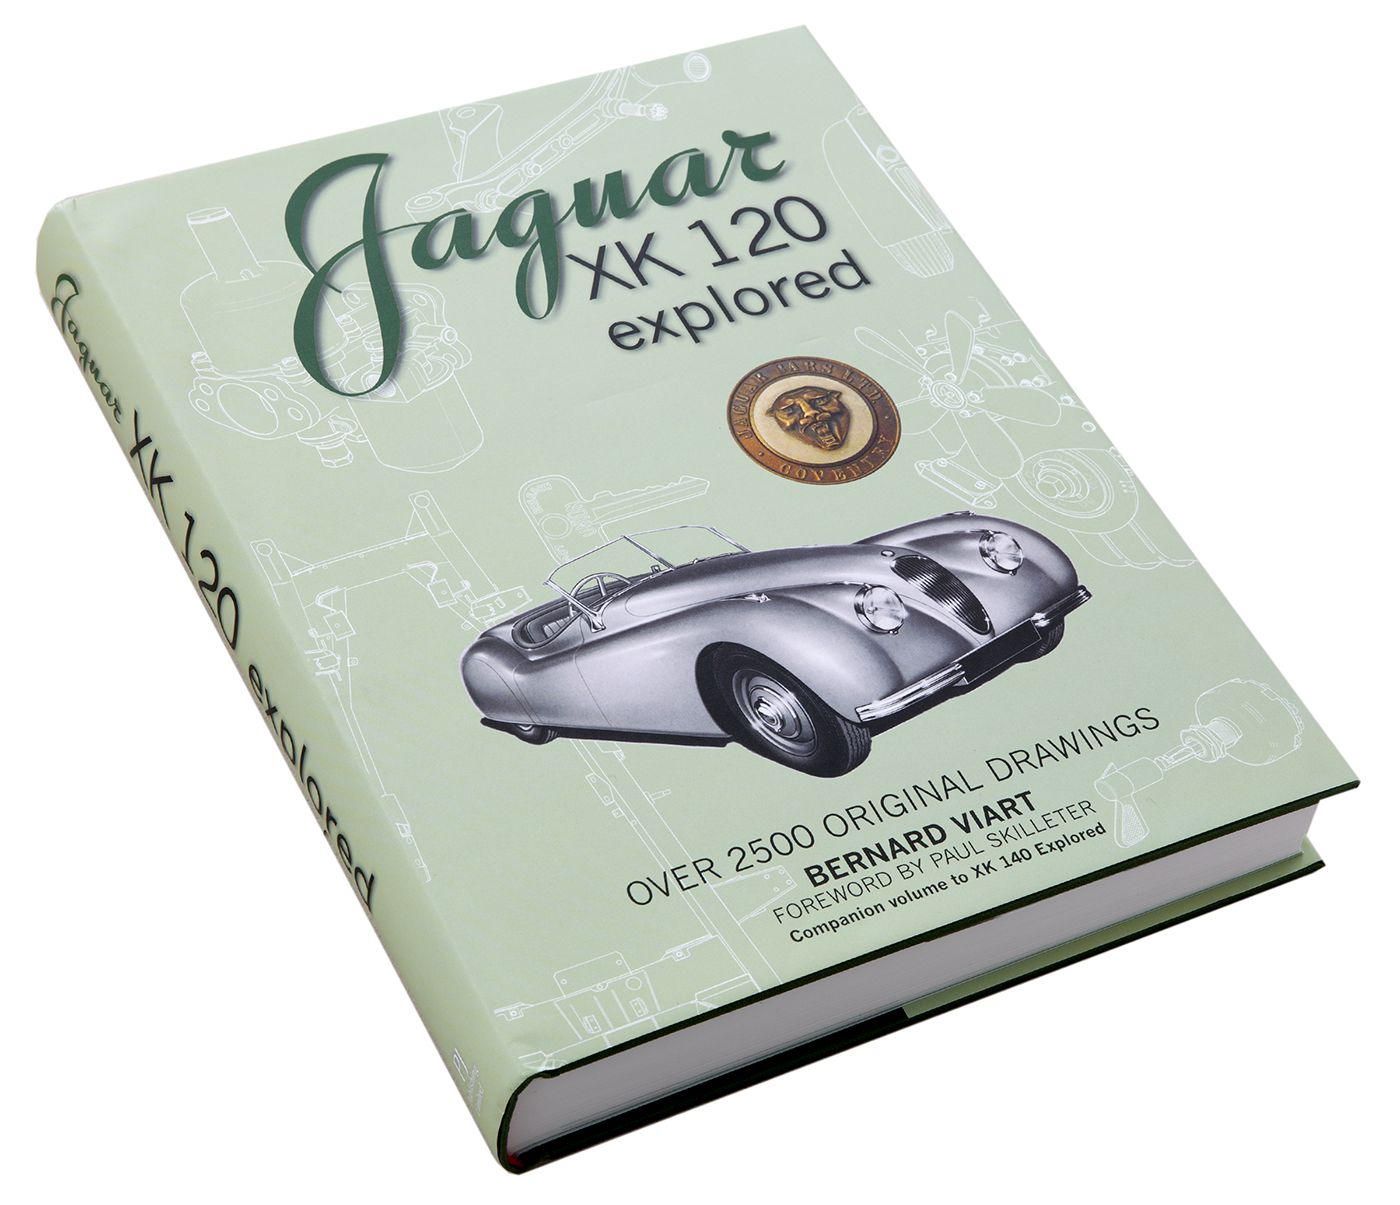 Jaguar XK120 Explored
Jaguar XK120 Explored
Jaguar XK120 Explore